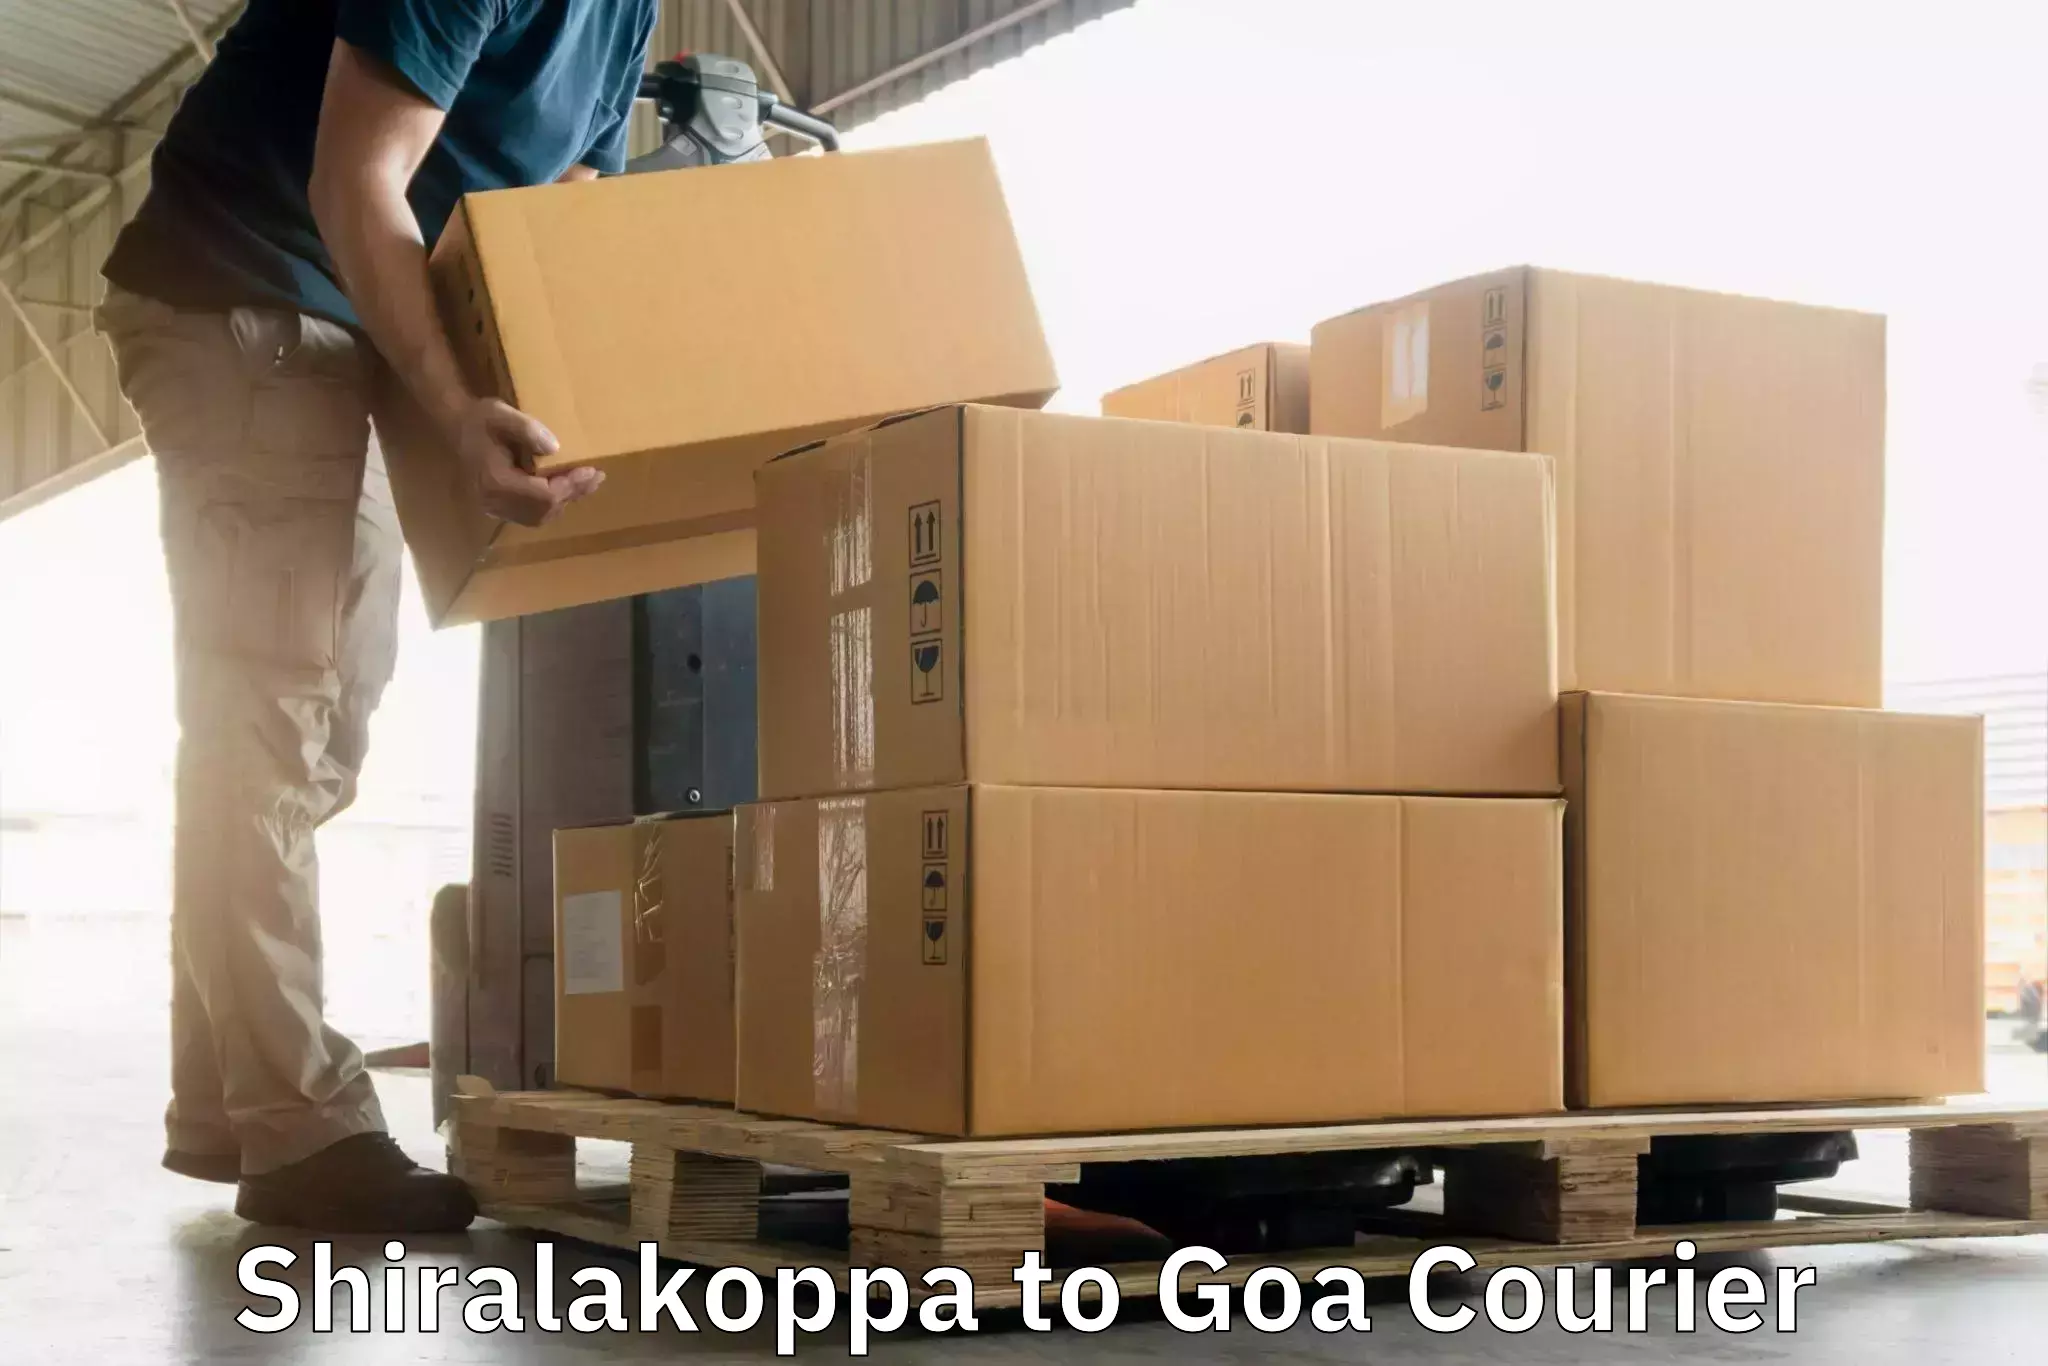 Express postal services Shiralakoppa to IIT Goa